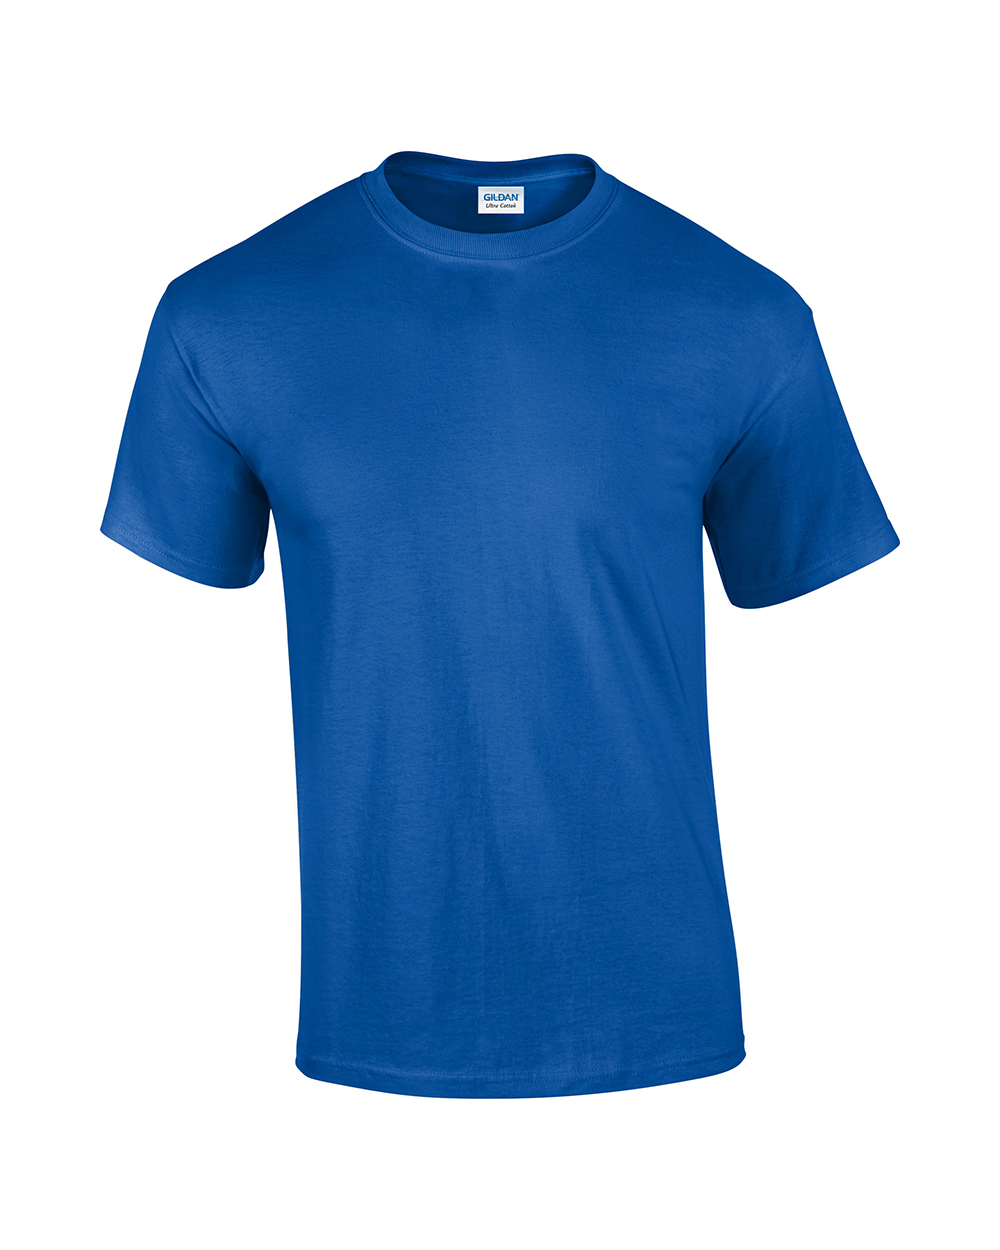 GD002 Gildan Ultra Cotton T Shirt Sizes Sml-5xl